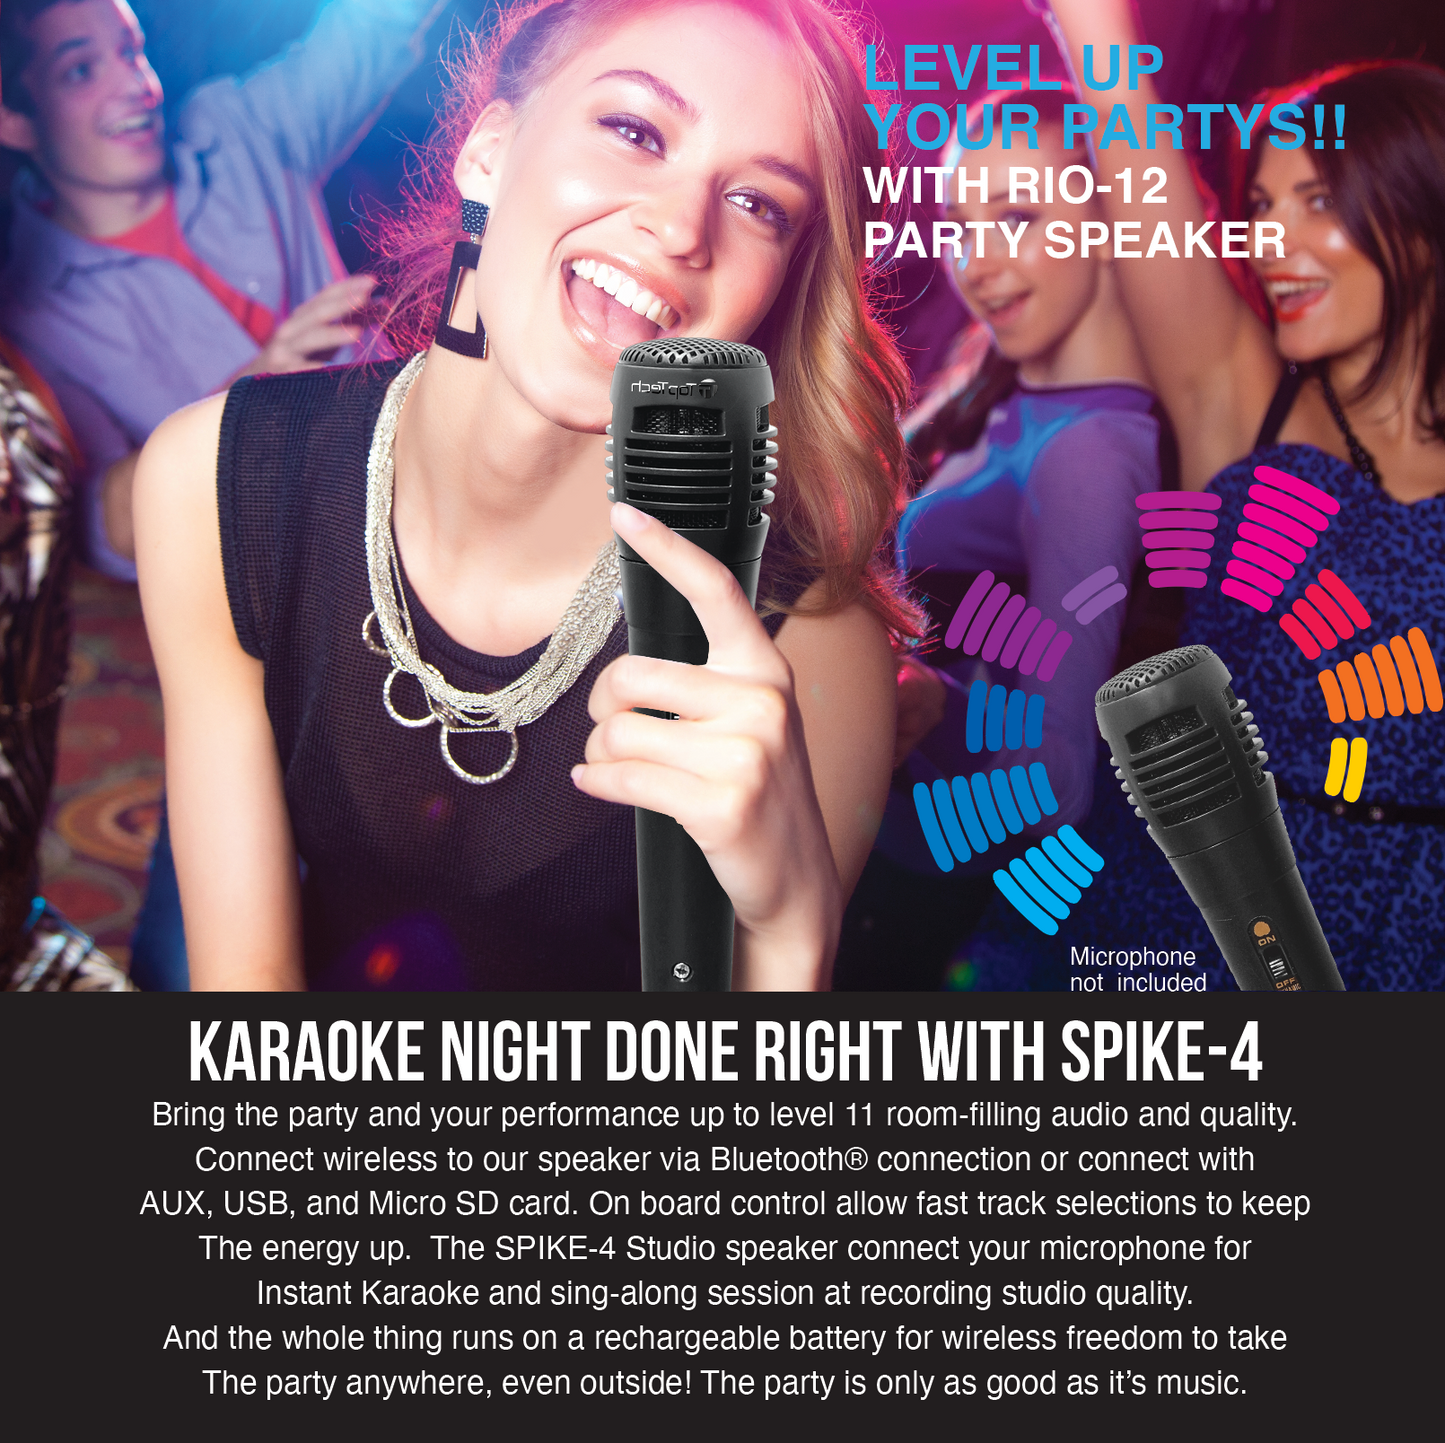 SPIKE-4 Party Speaker